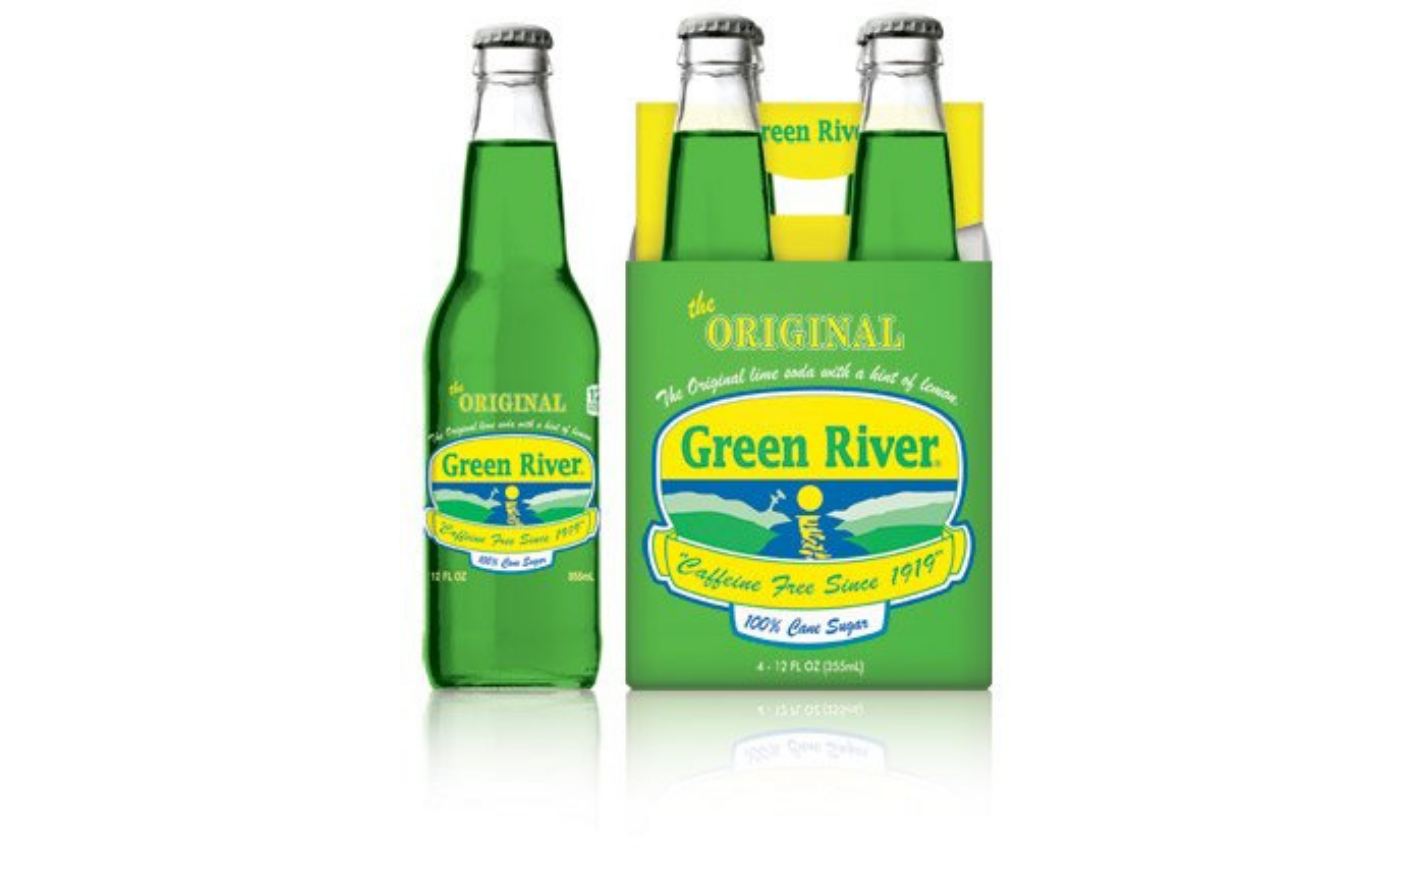 Green River soda